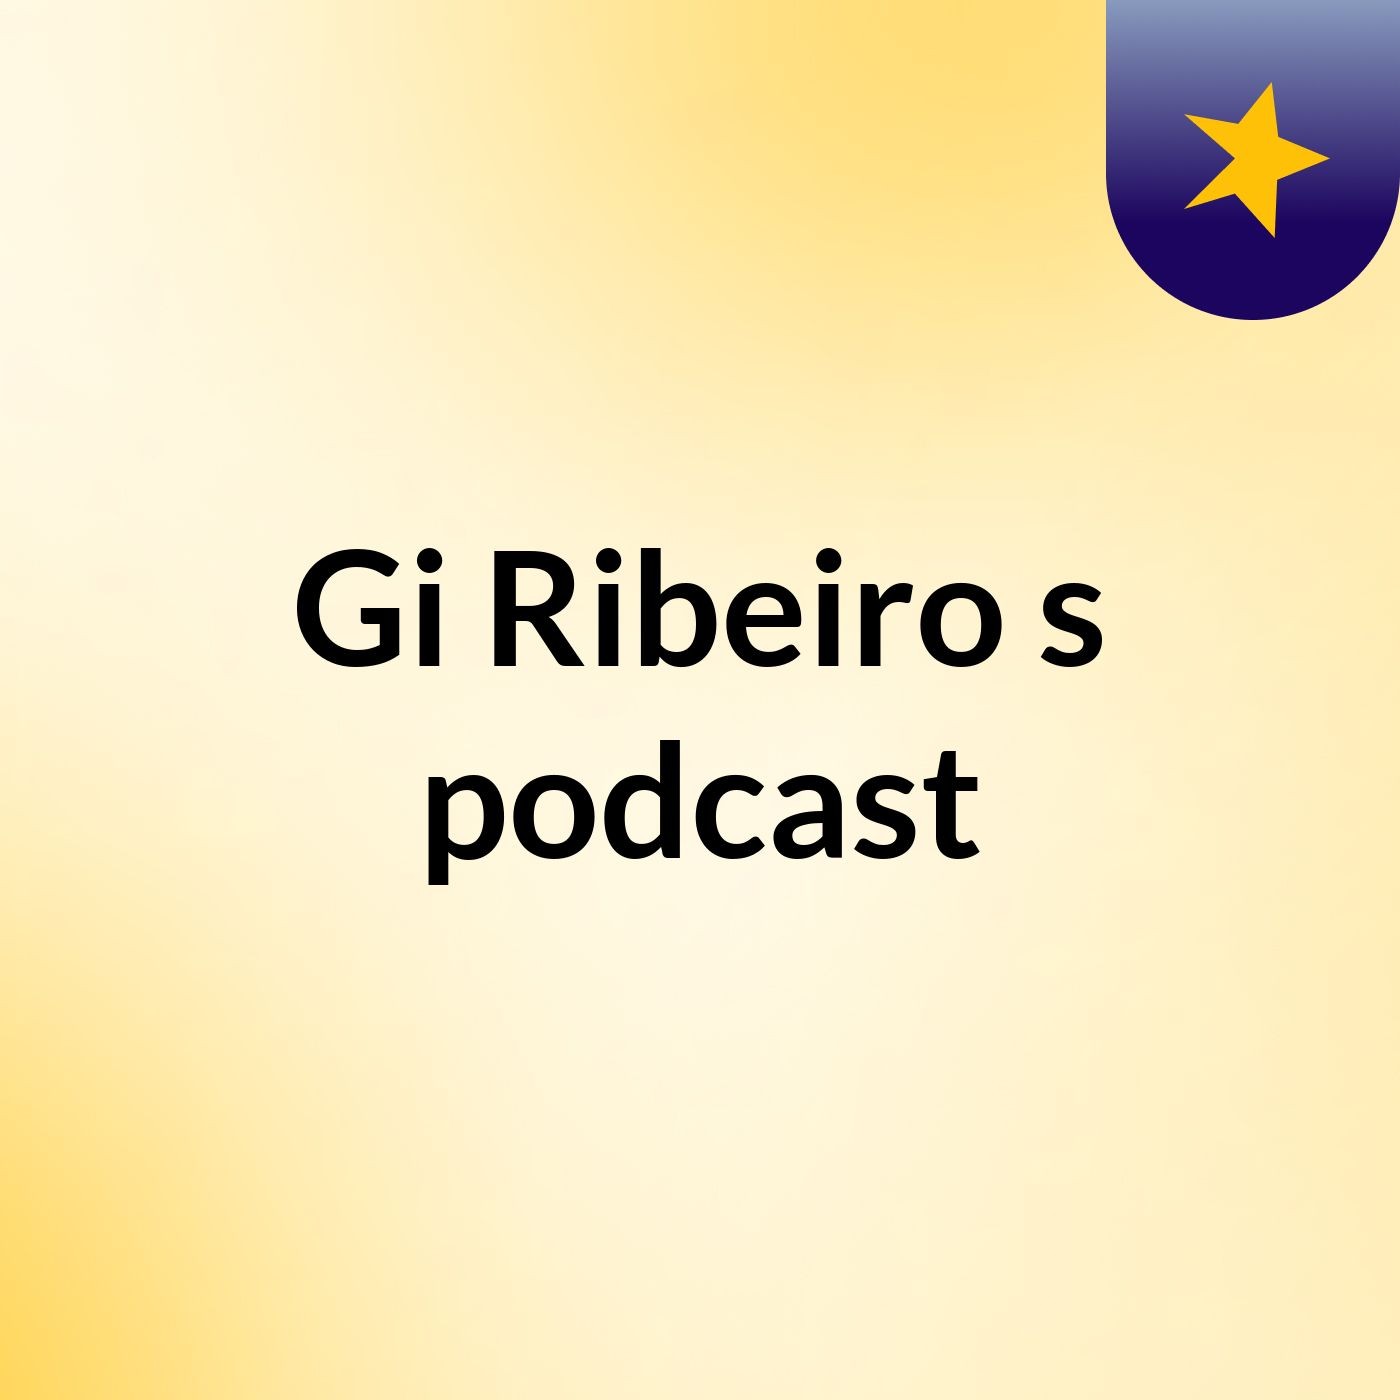 Gi Ribeiro's podcast